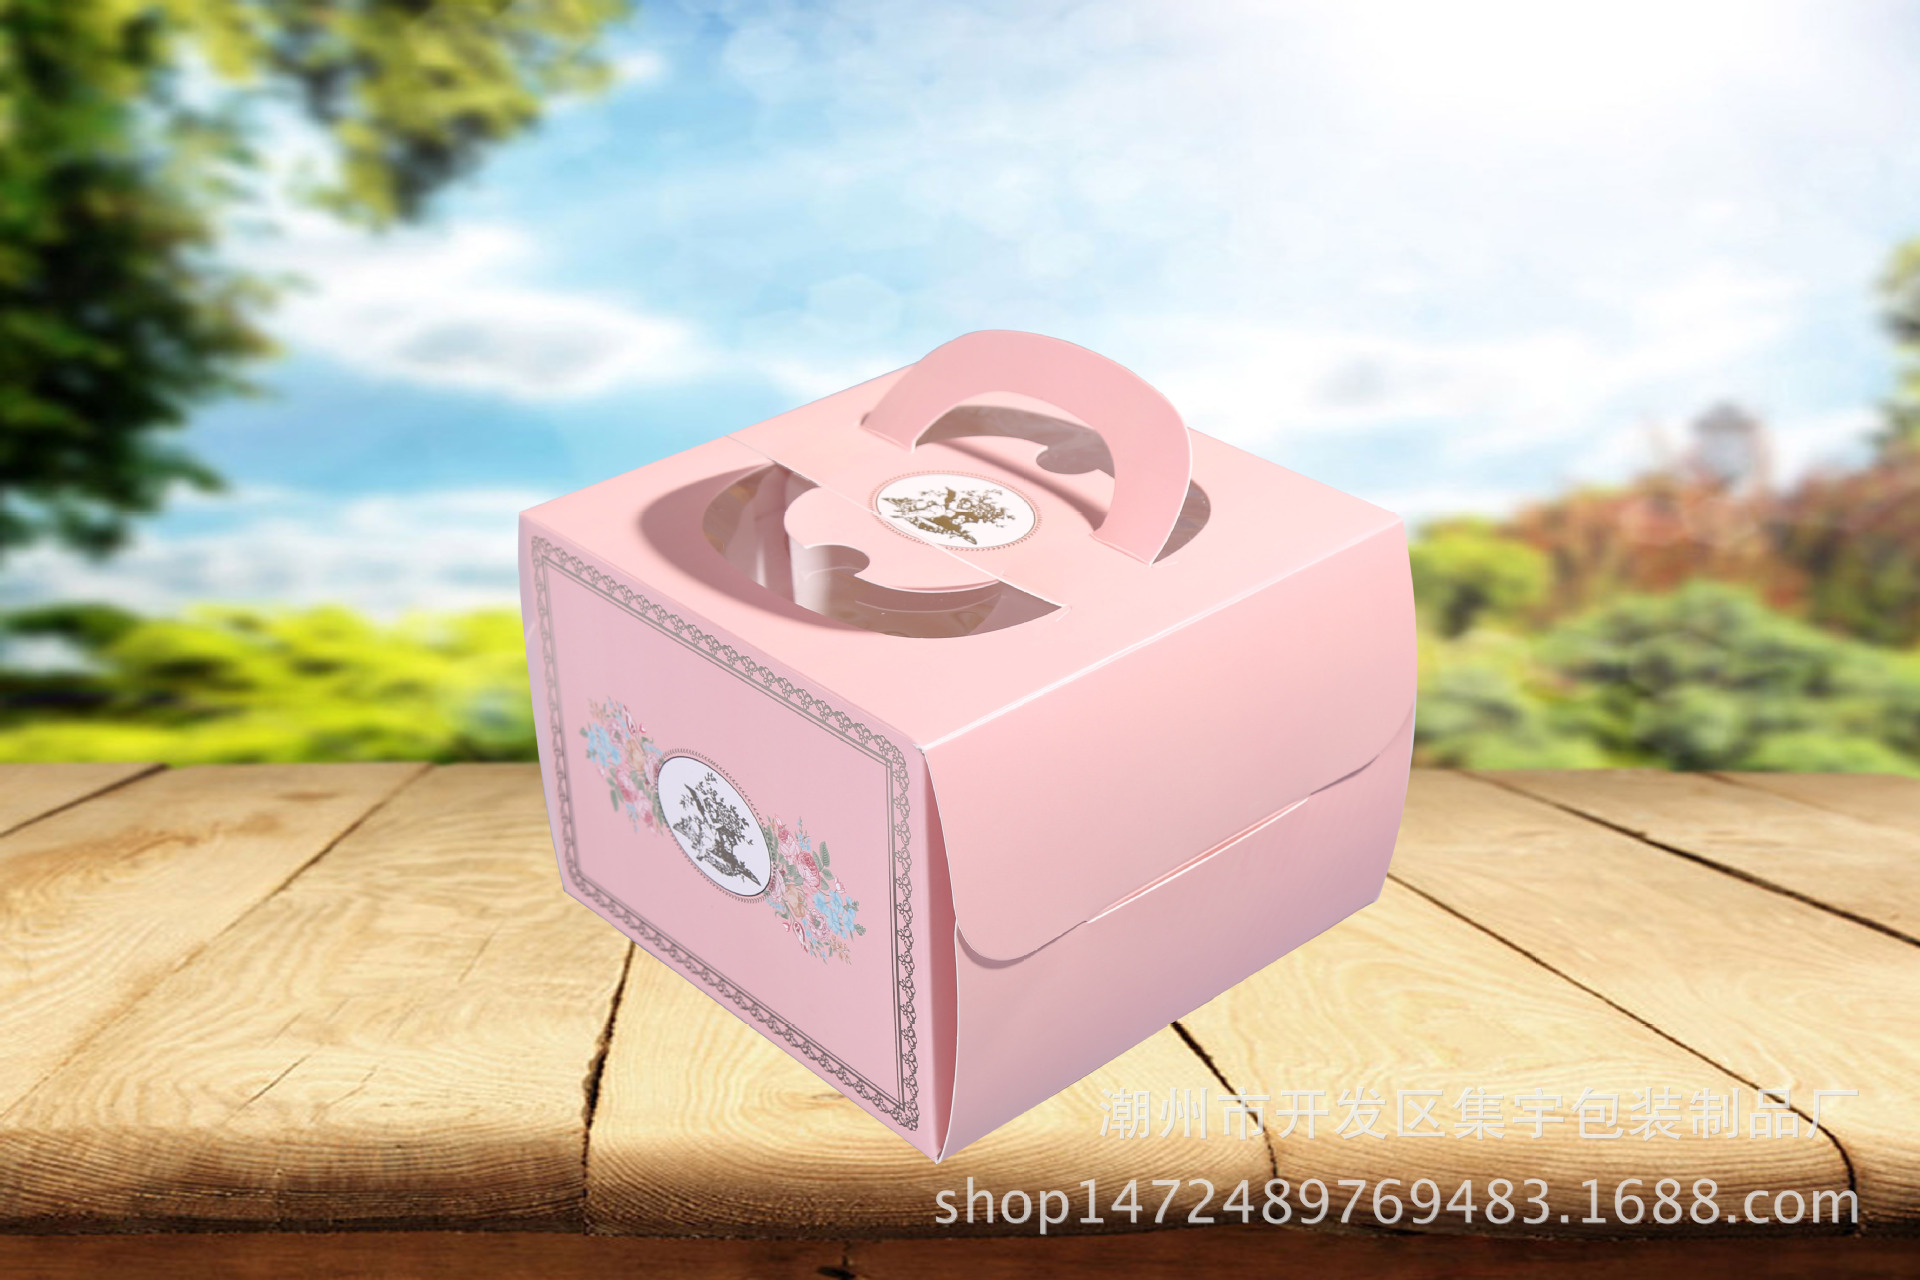 手提6寸欧压痕烫金粉金西点烘焙蛋糕盒礼品盒 烘焙定制小点心盒